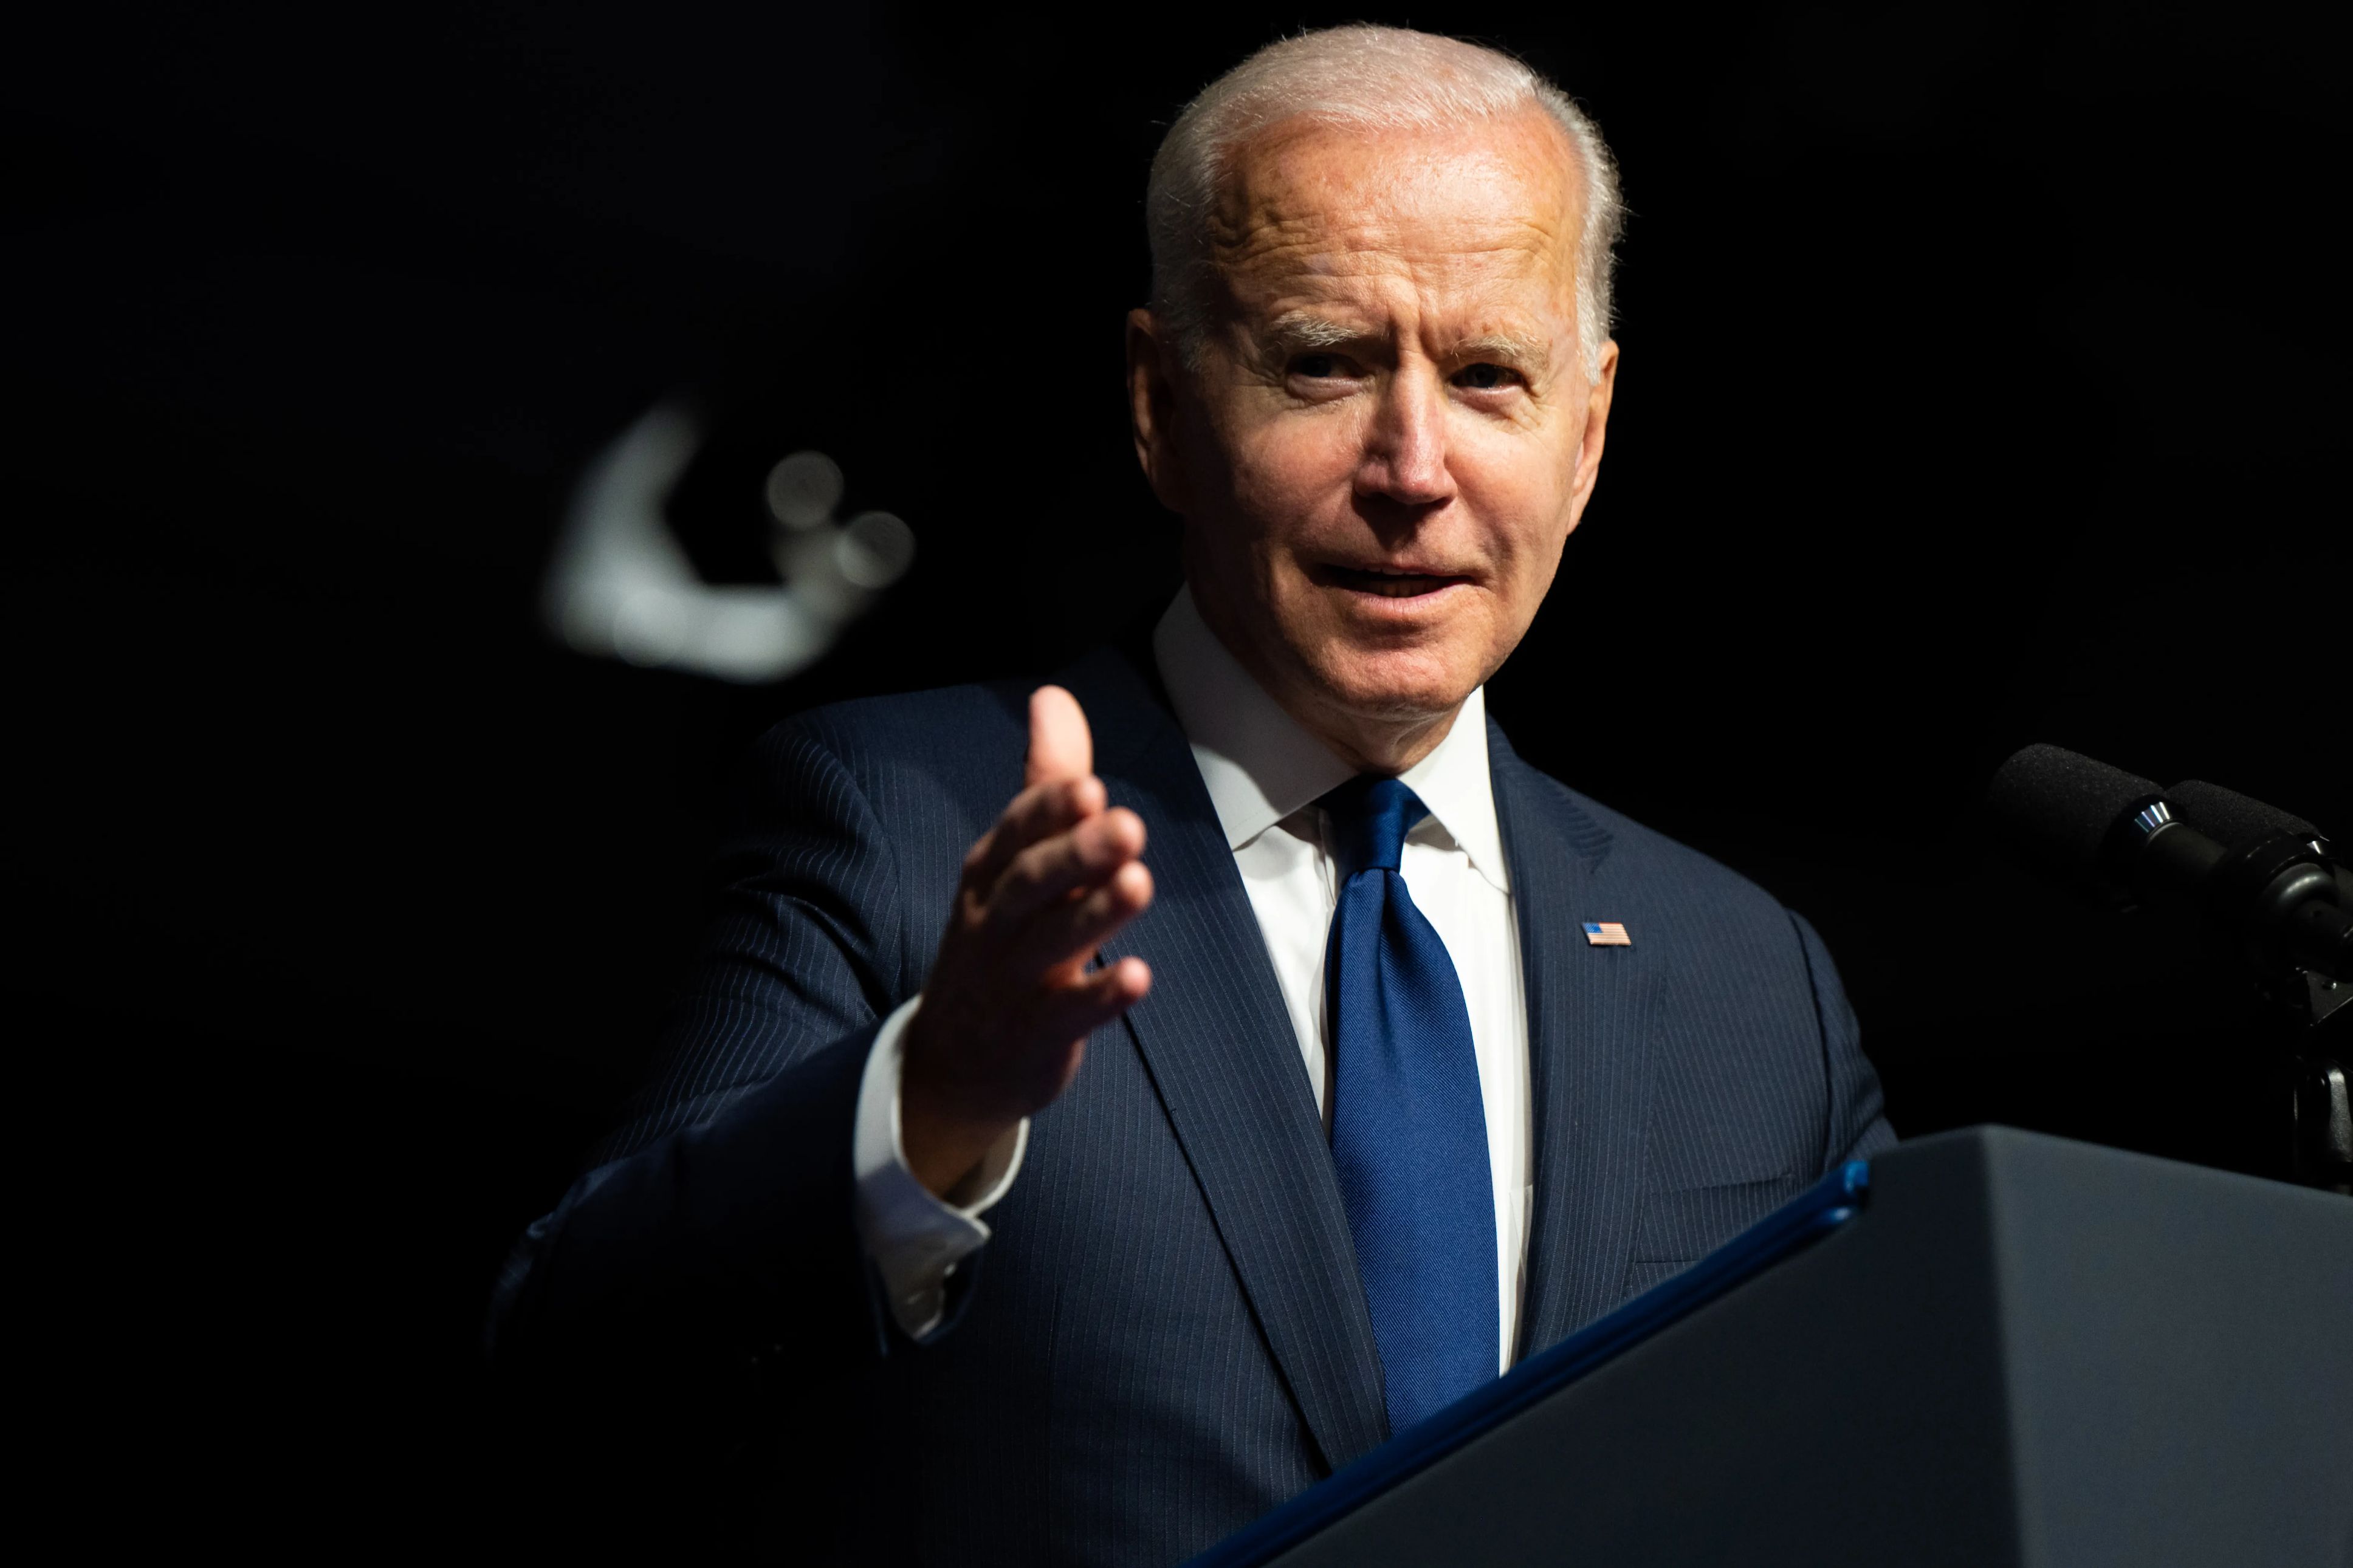 Joe Biden speaks at an event